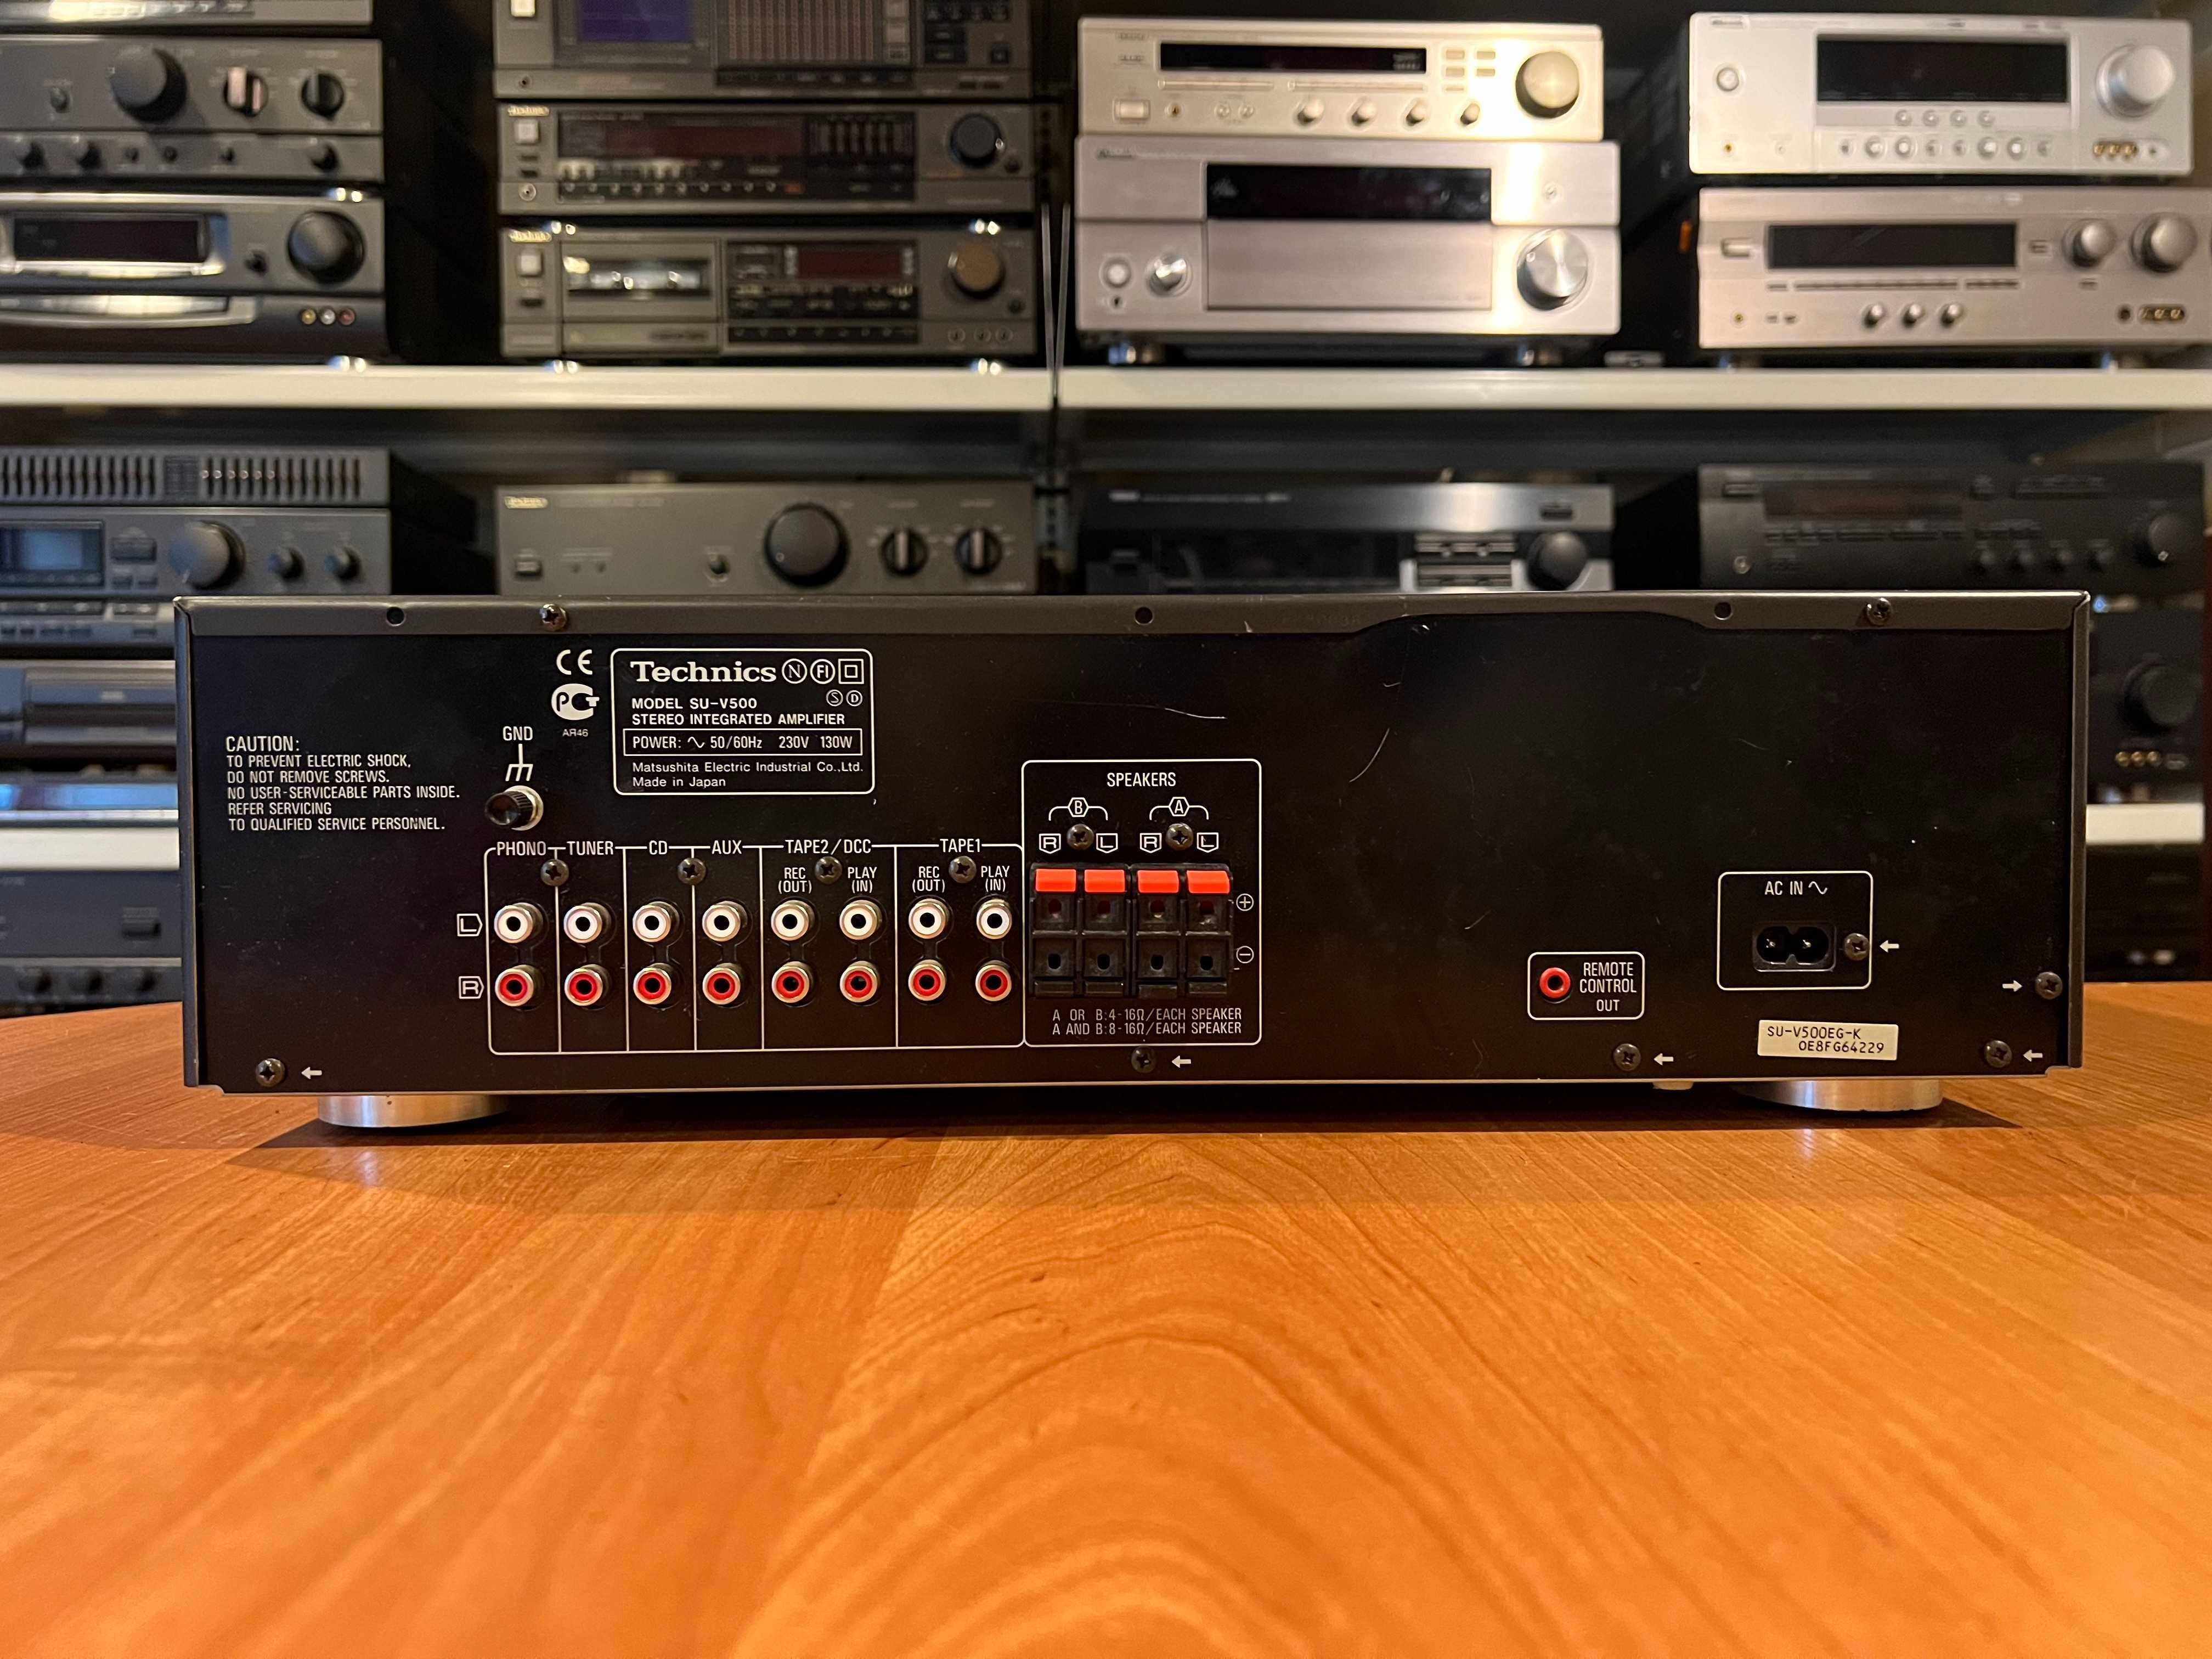 Wzmacniacz Technics SU-V500 Audio Room